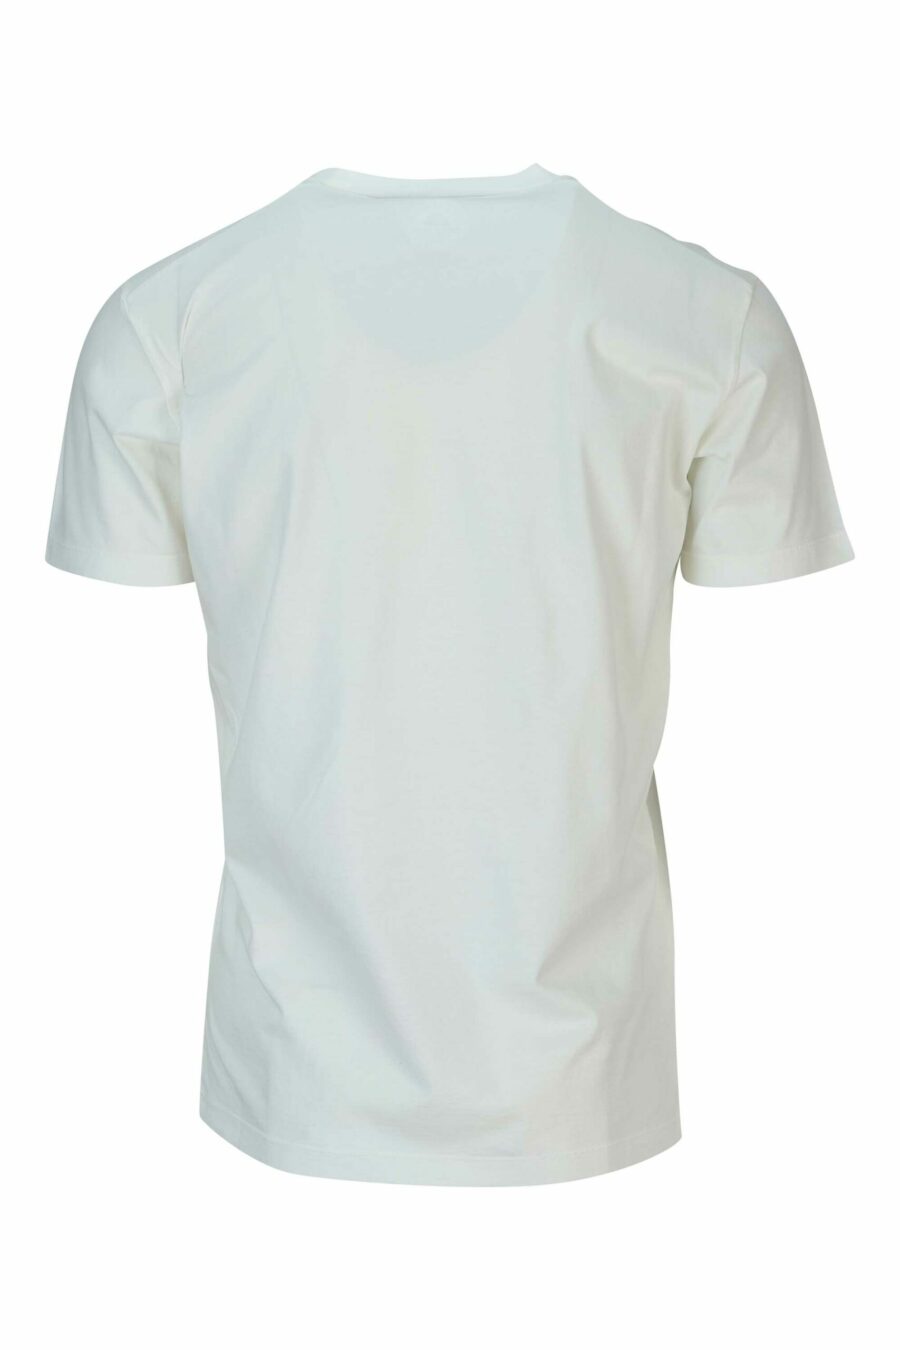 Weißes T-Shirt mit "vip" Maxilogo - 8054148578855 1 skaliert